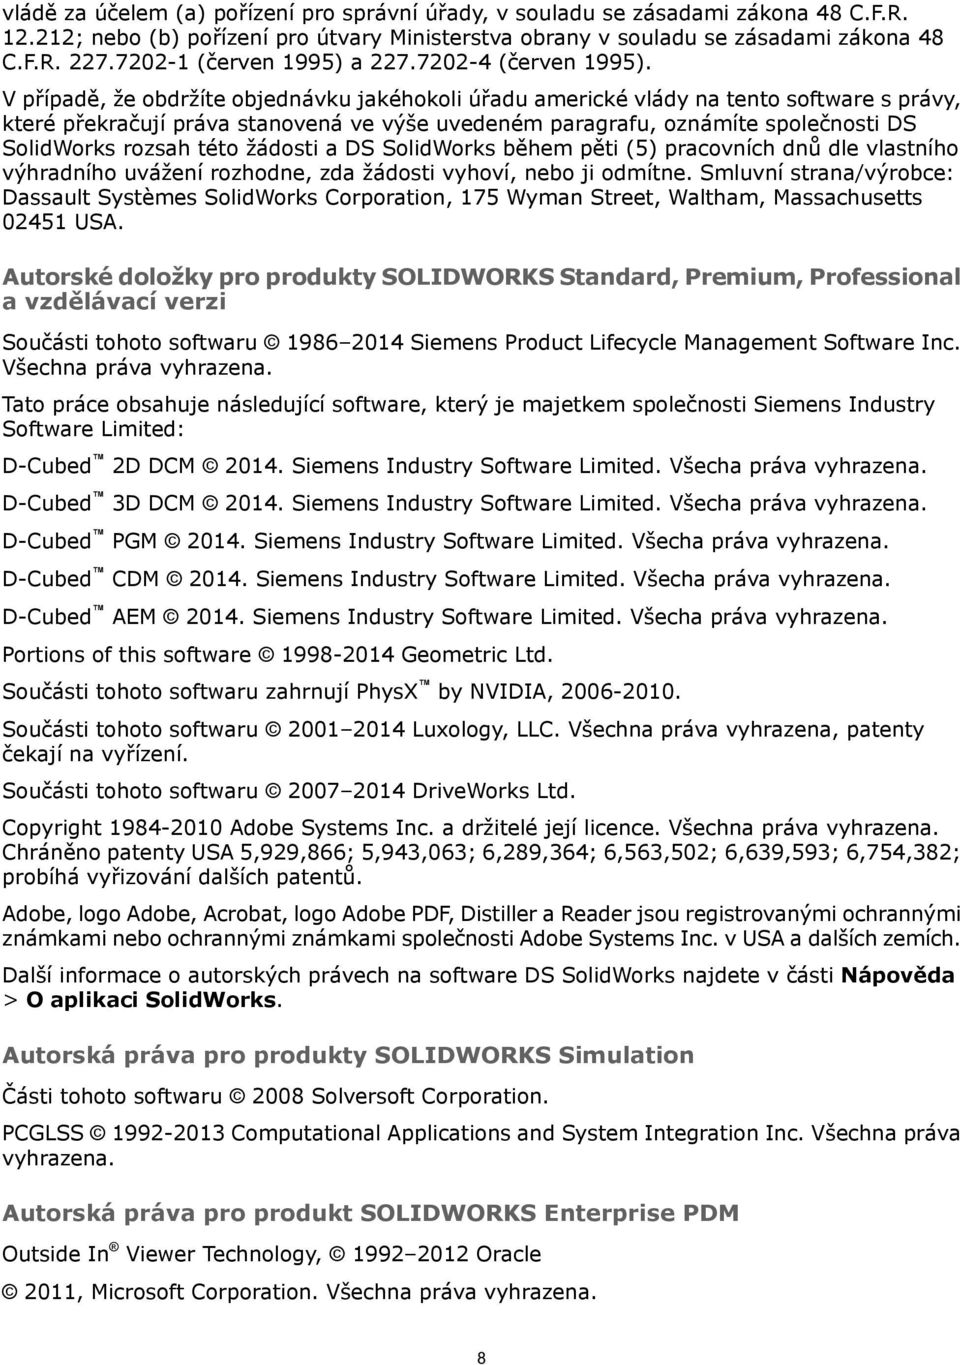 V případě, že obdržíte objednávku jakéhokoli úřadu americké vlády na tento software s právy, které překračují práva stanovená ve výše uvedeném paragrafu, oznámíte společnosti DS SolidWorks rozsah